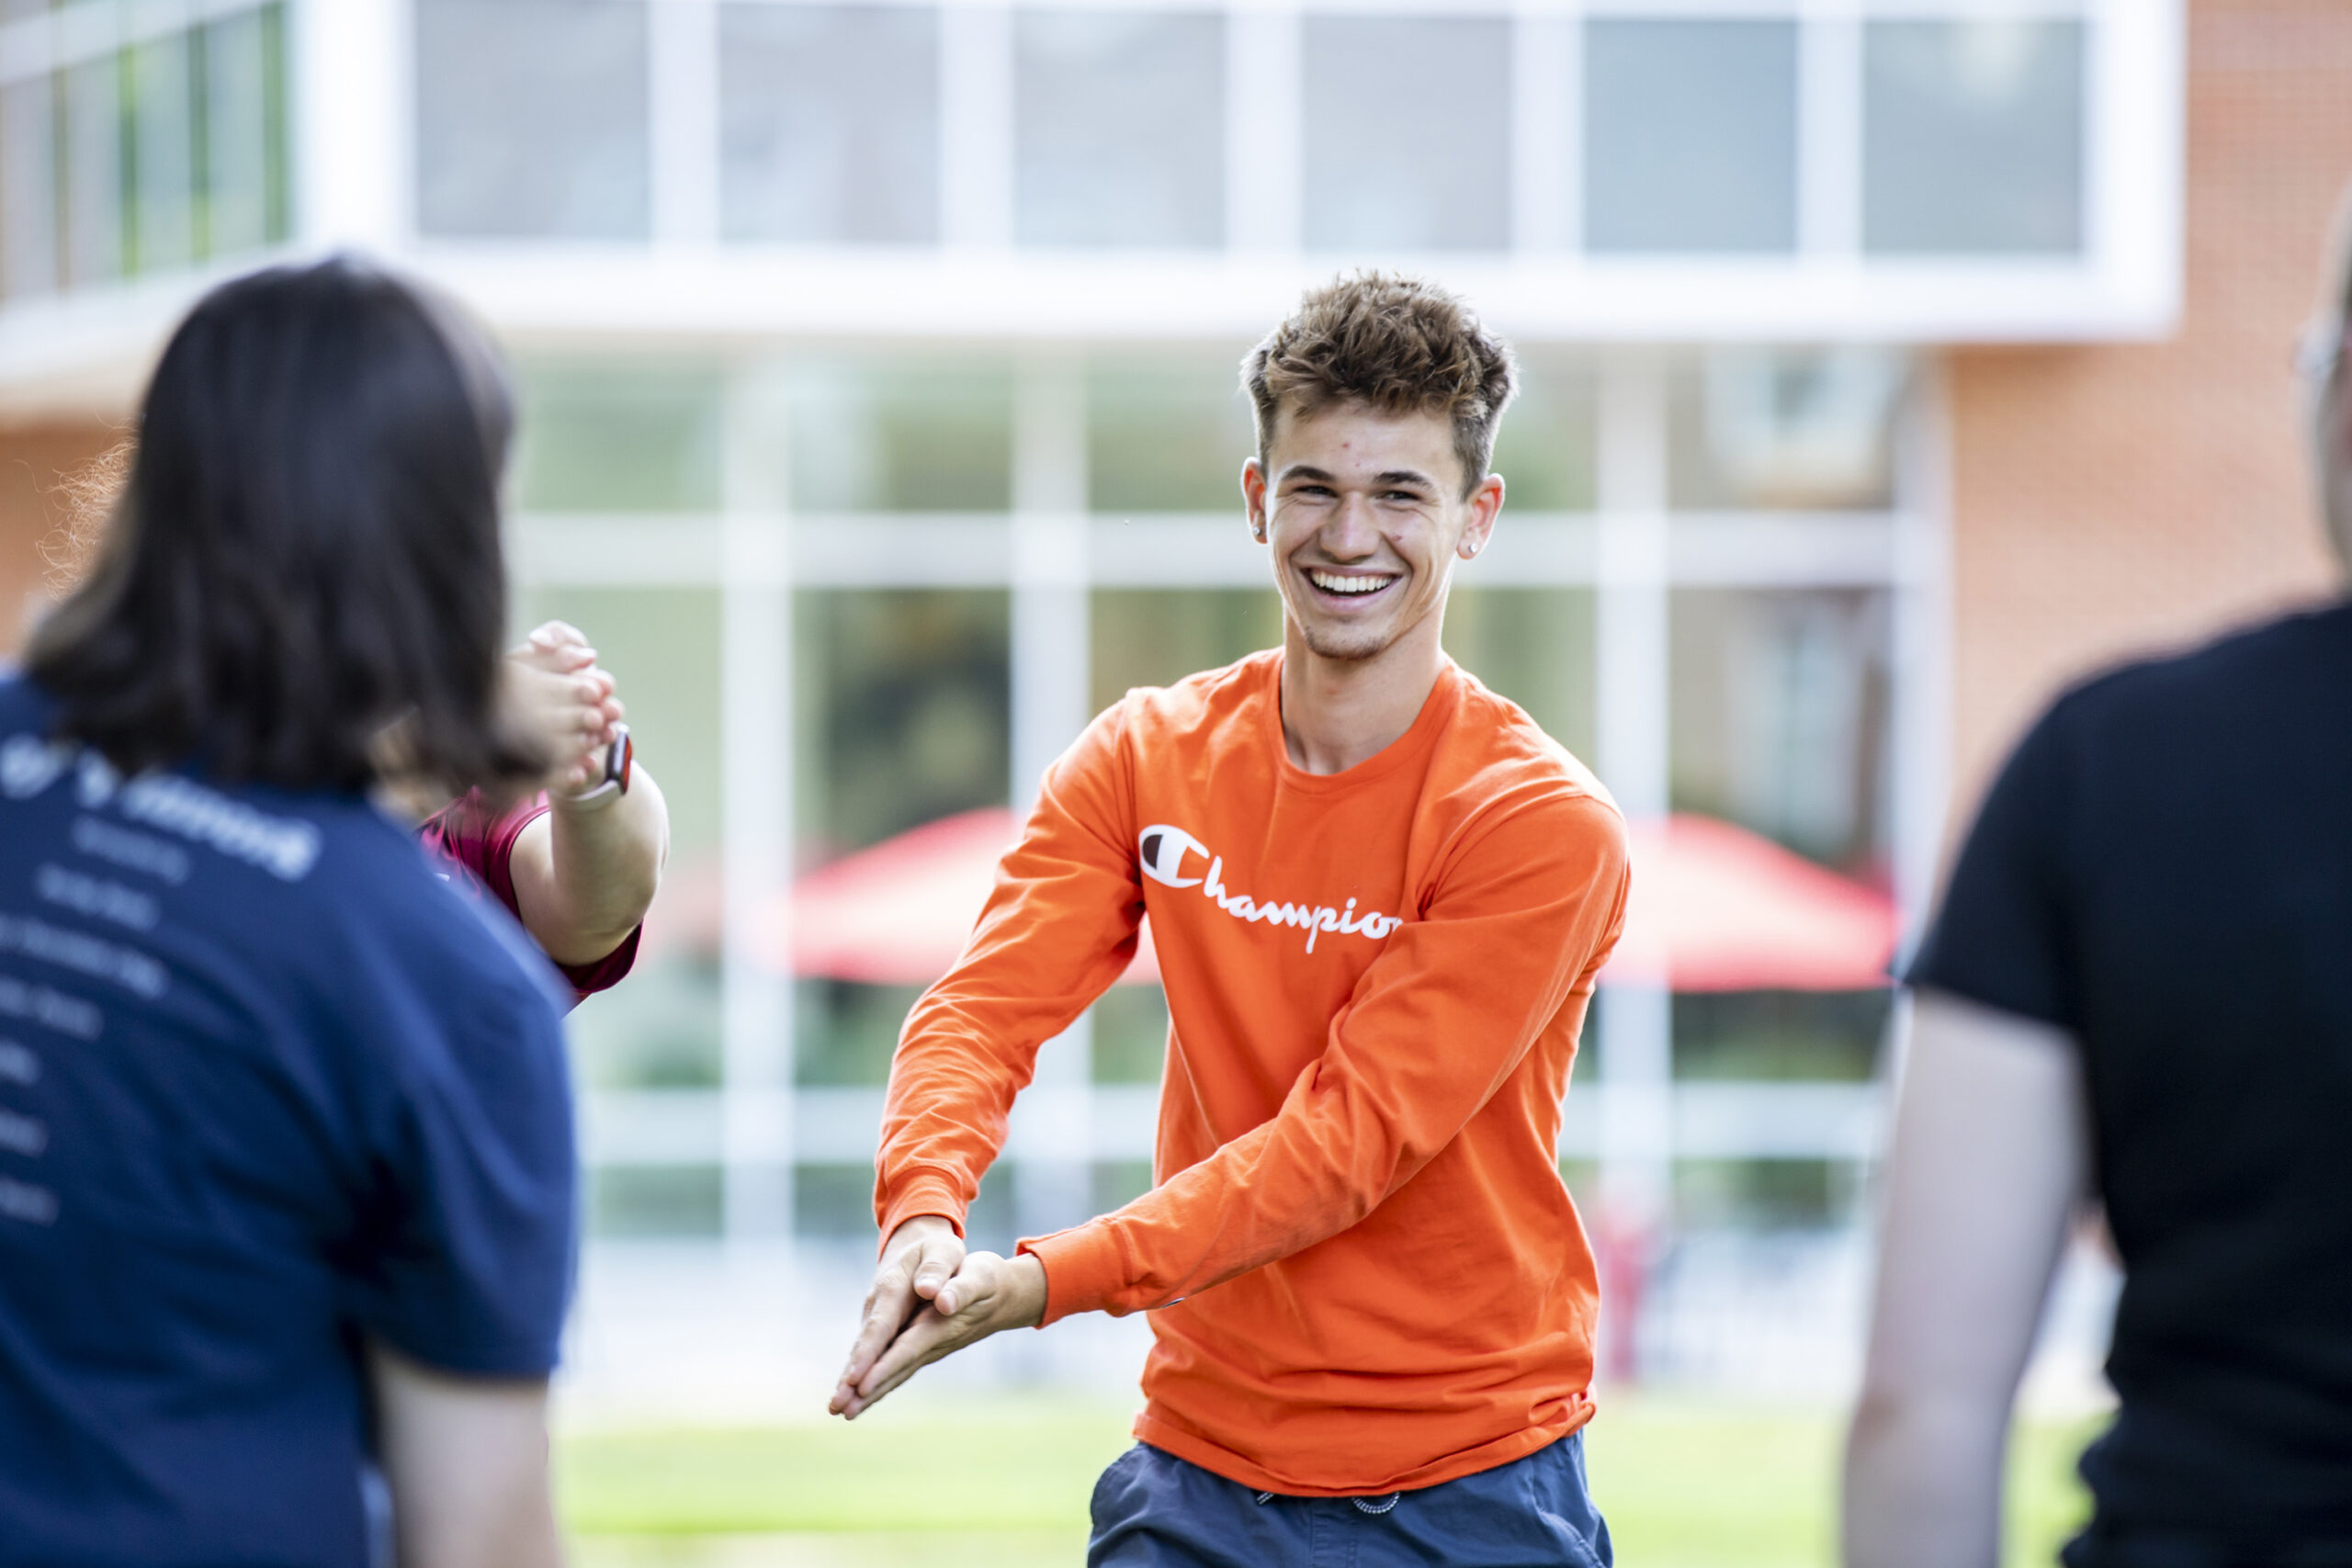 Student wearing orange shirt playing a game during orientation